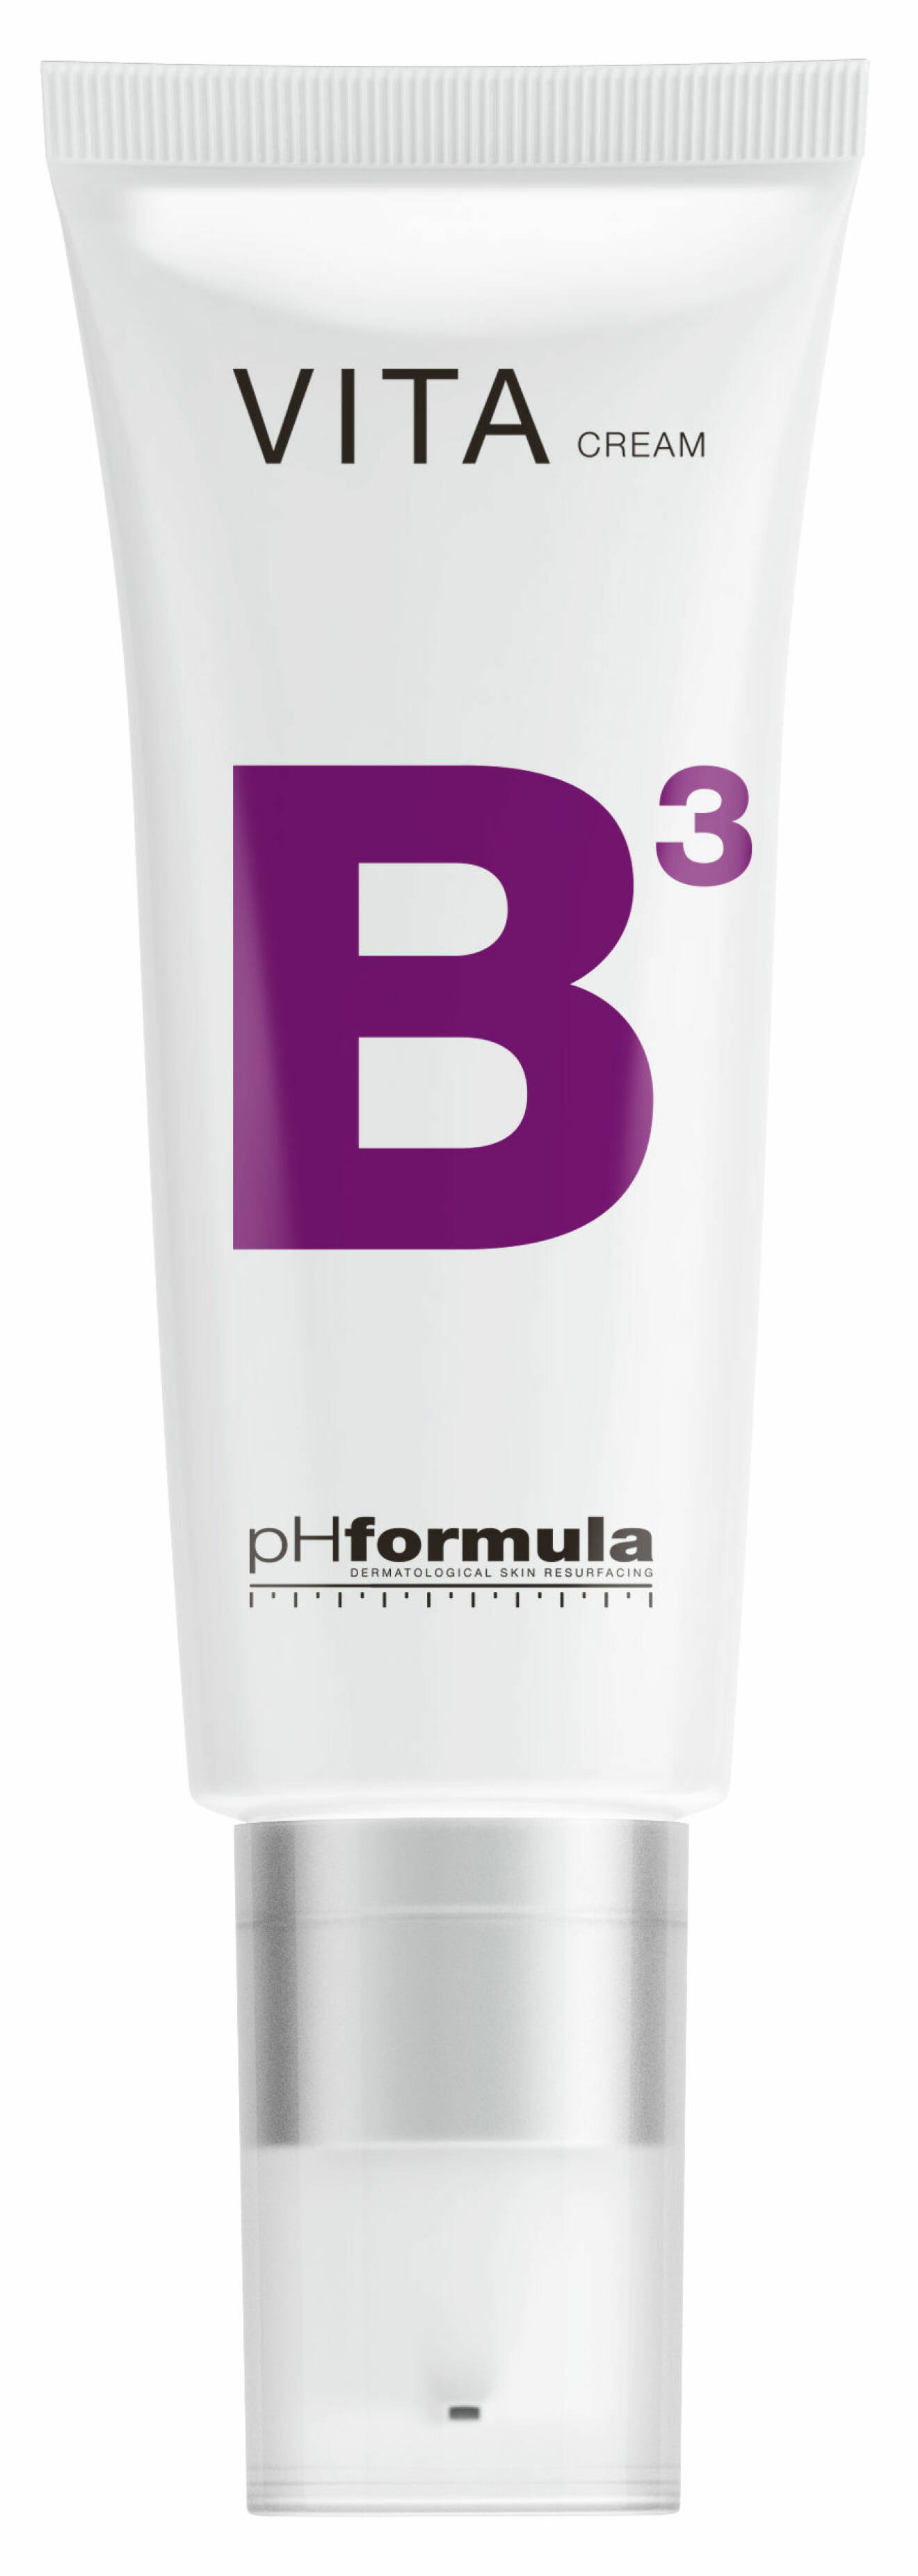 Vita B Cream, pH Formula.